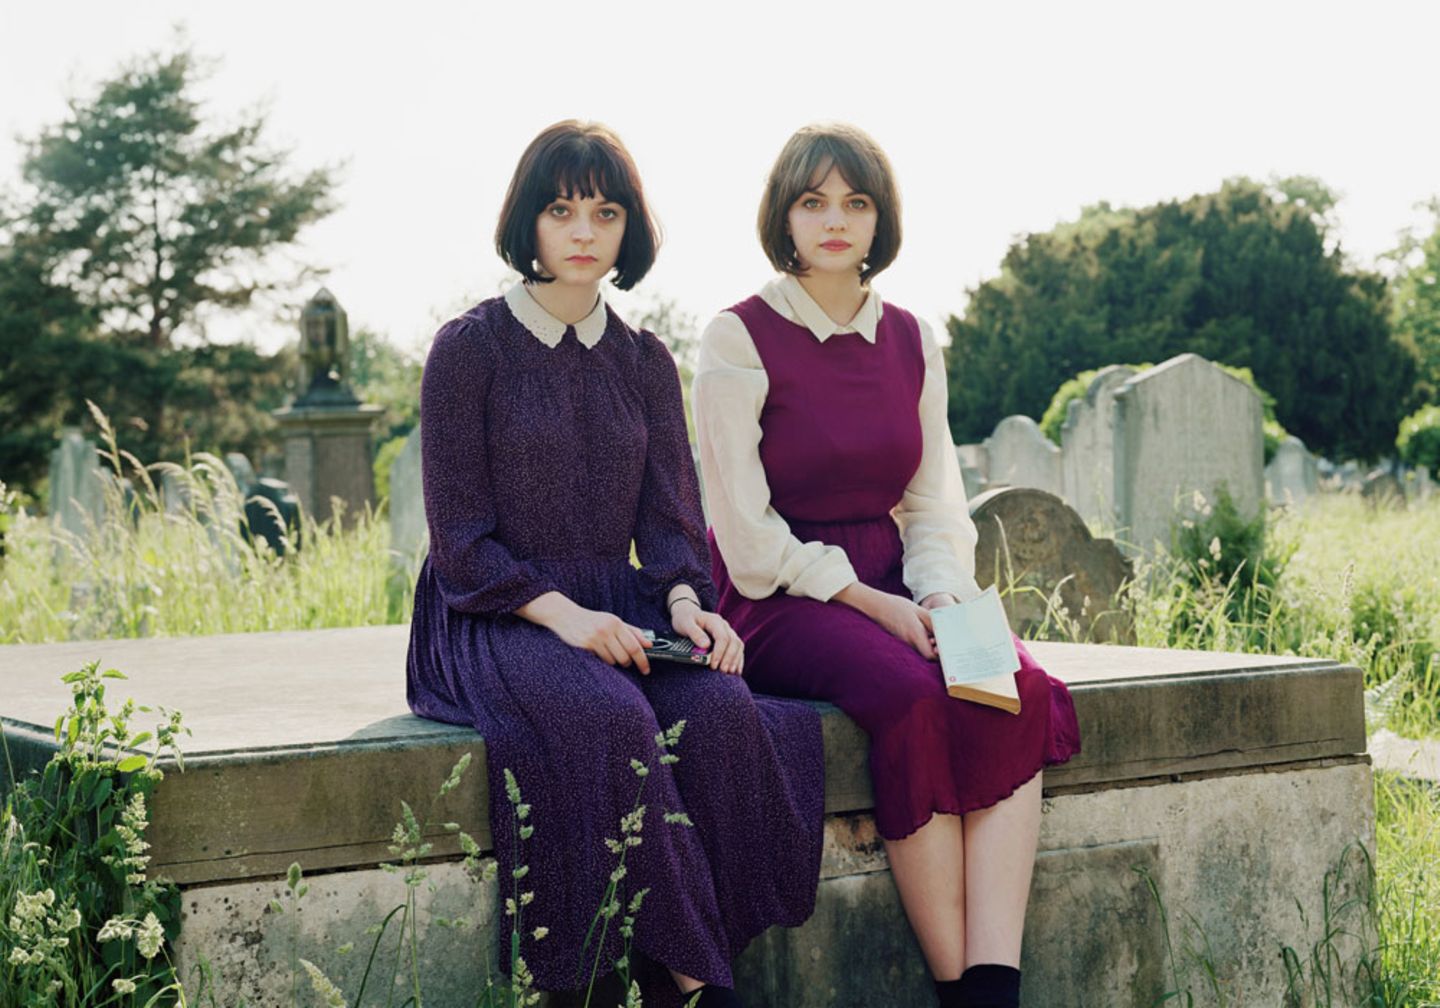 Alice und Lizzie auf einem viktorianischen Friedhof